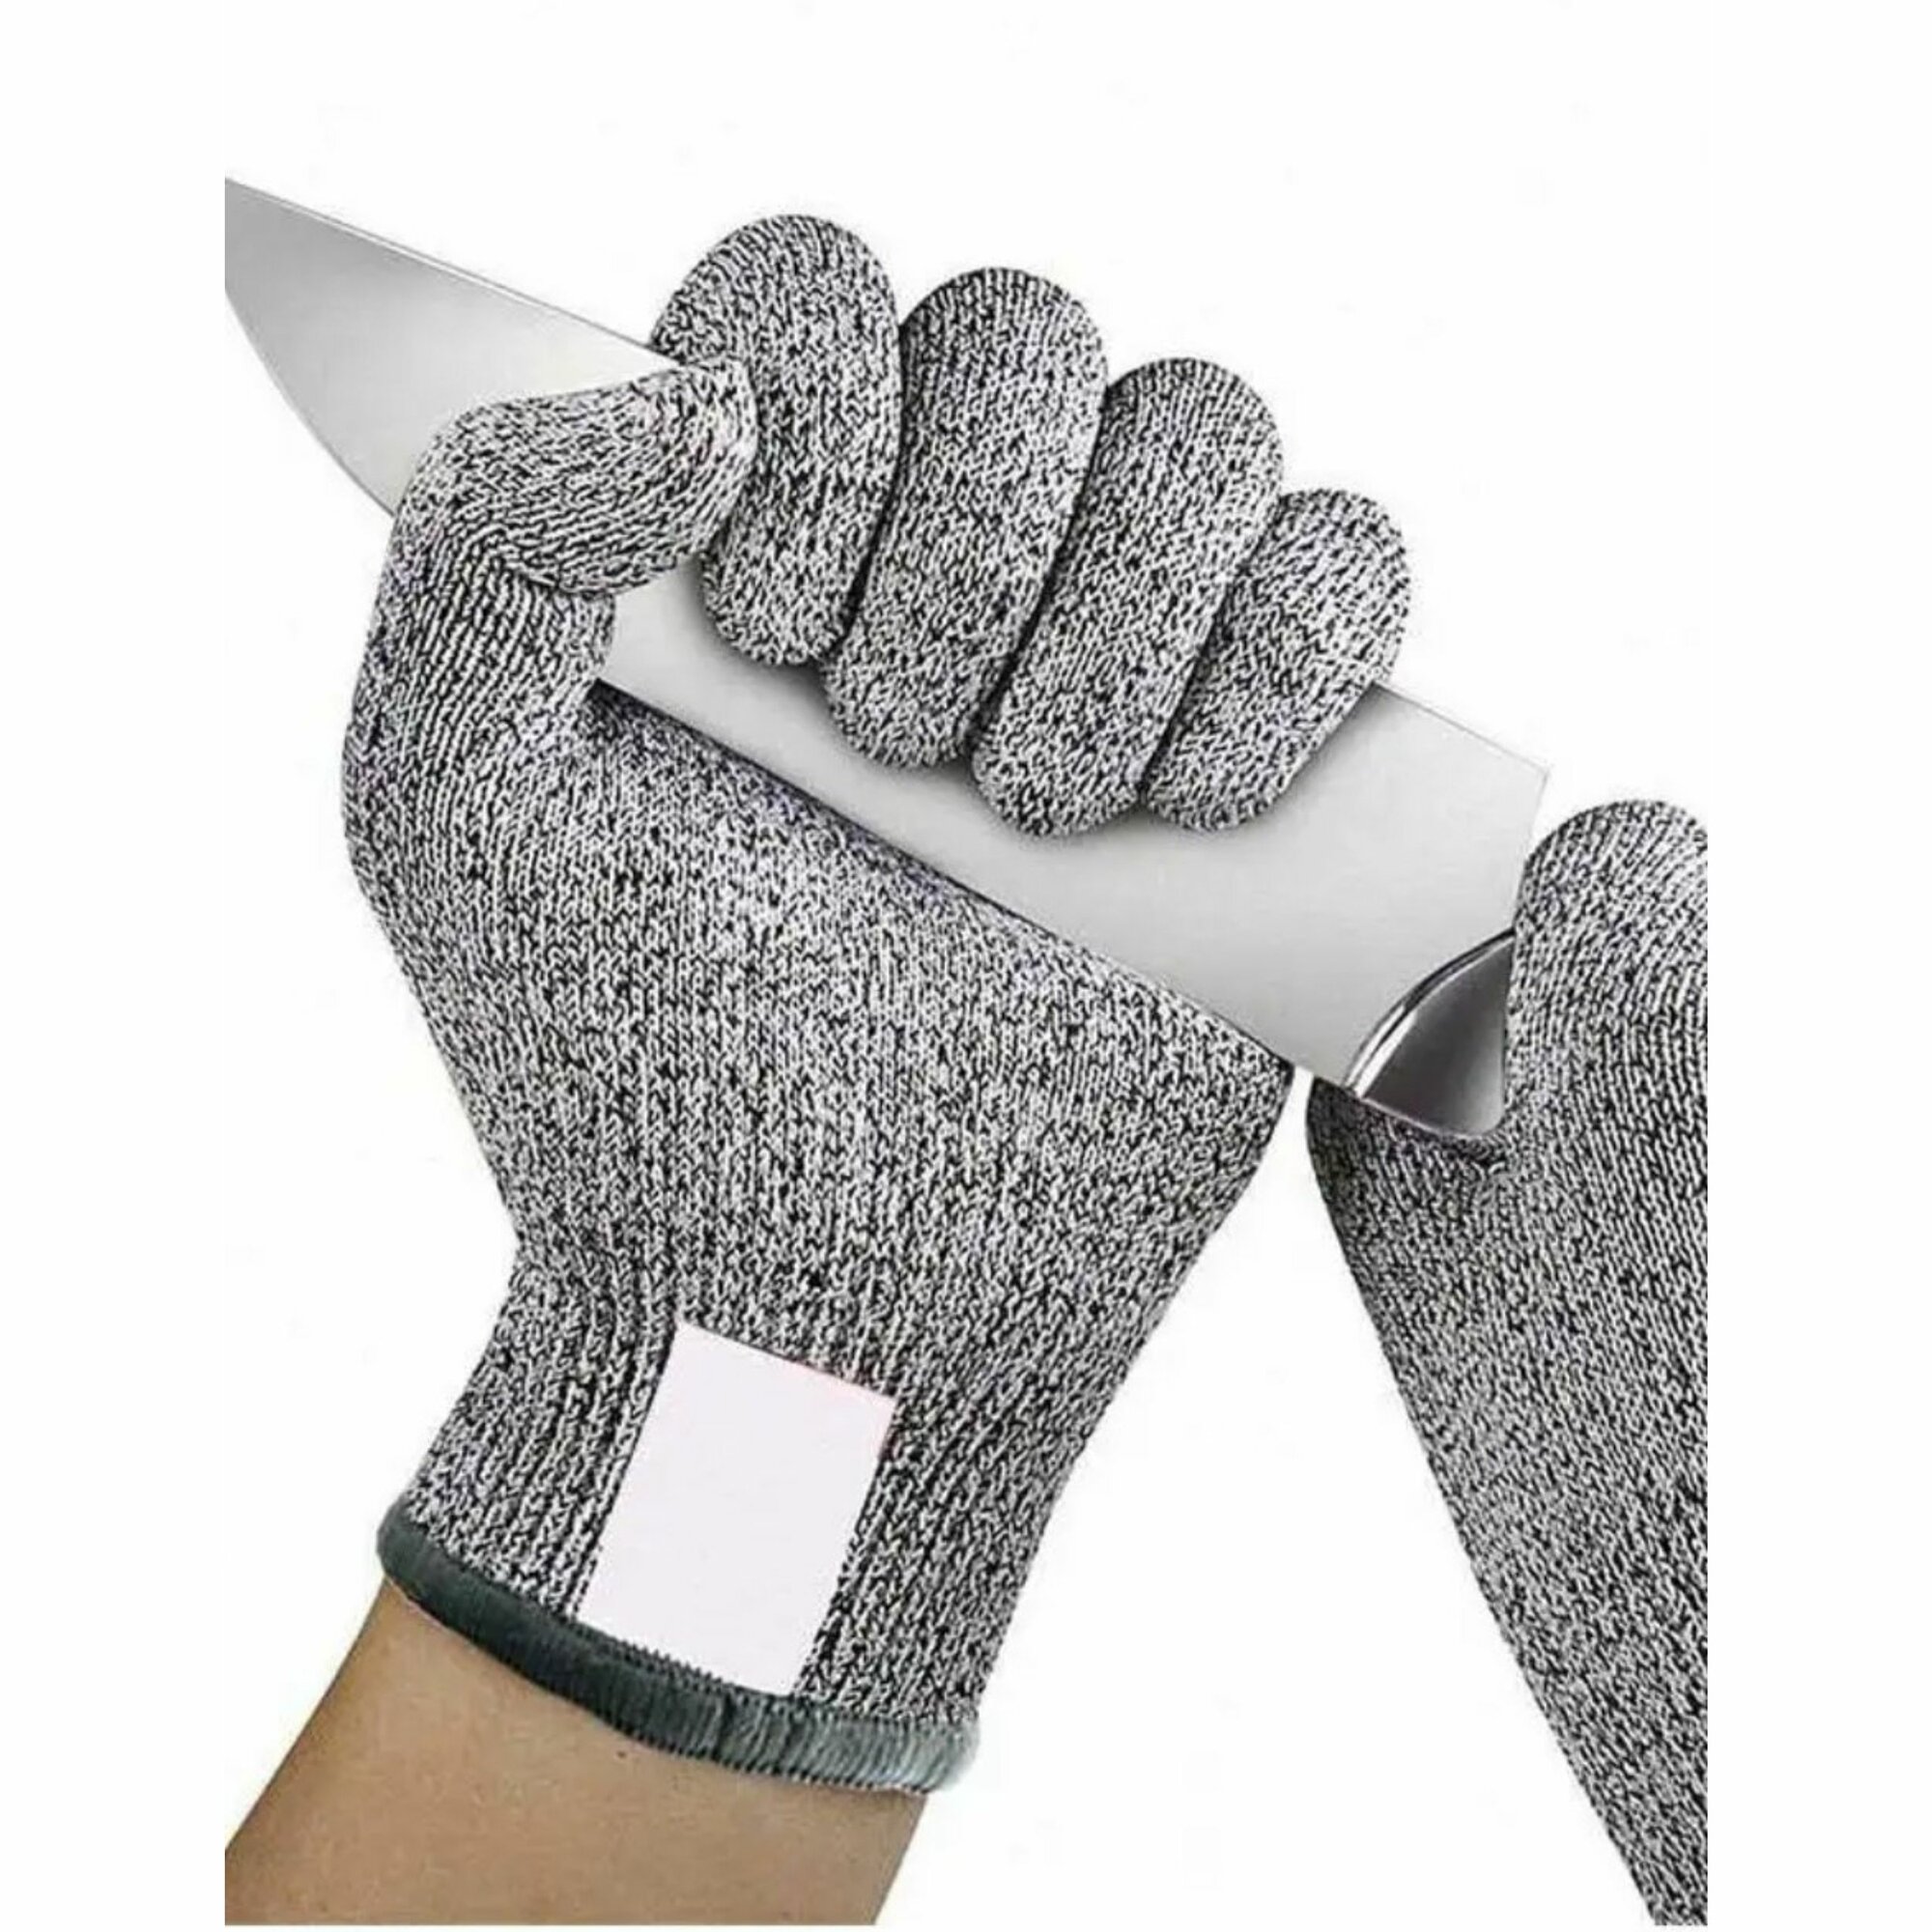 Перчатки защитные от порезов, высокого класса защиты